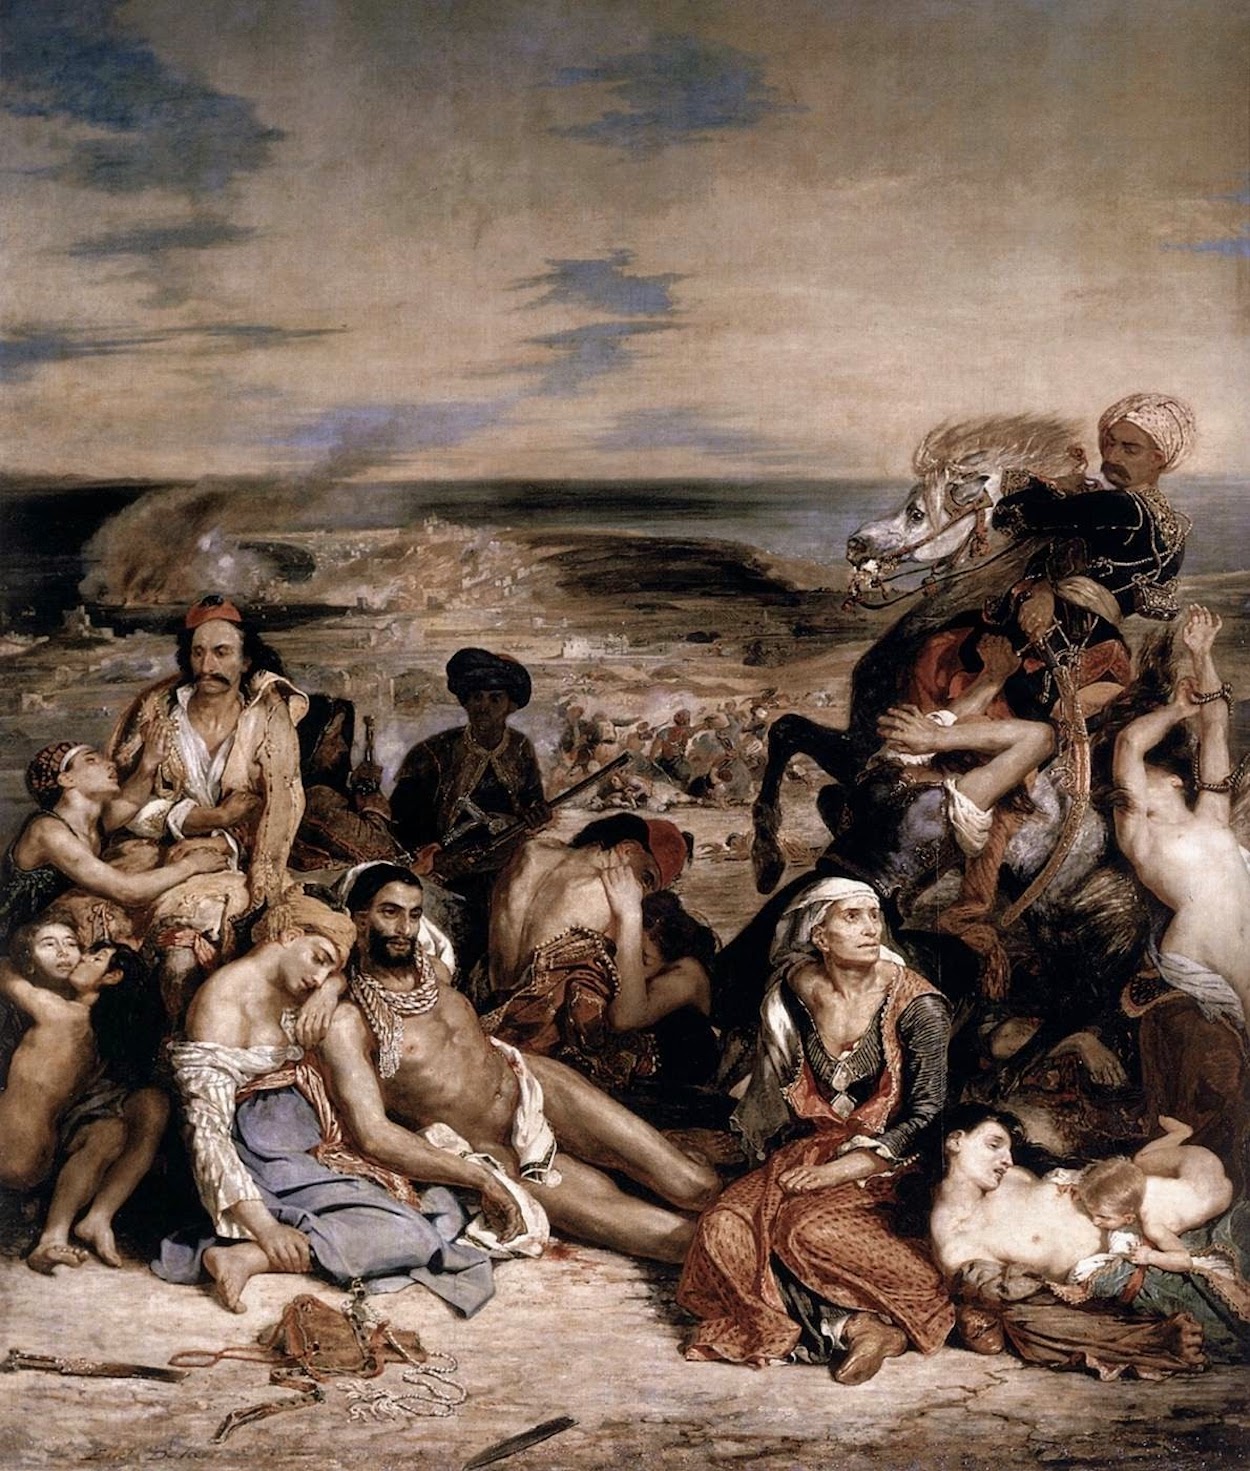 O Massacre de Quios by Eugène Delacroix - 1824 Musée du Louvre